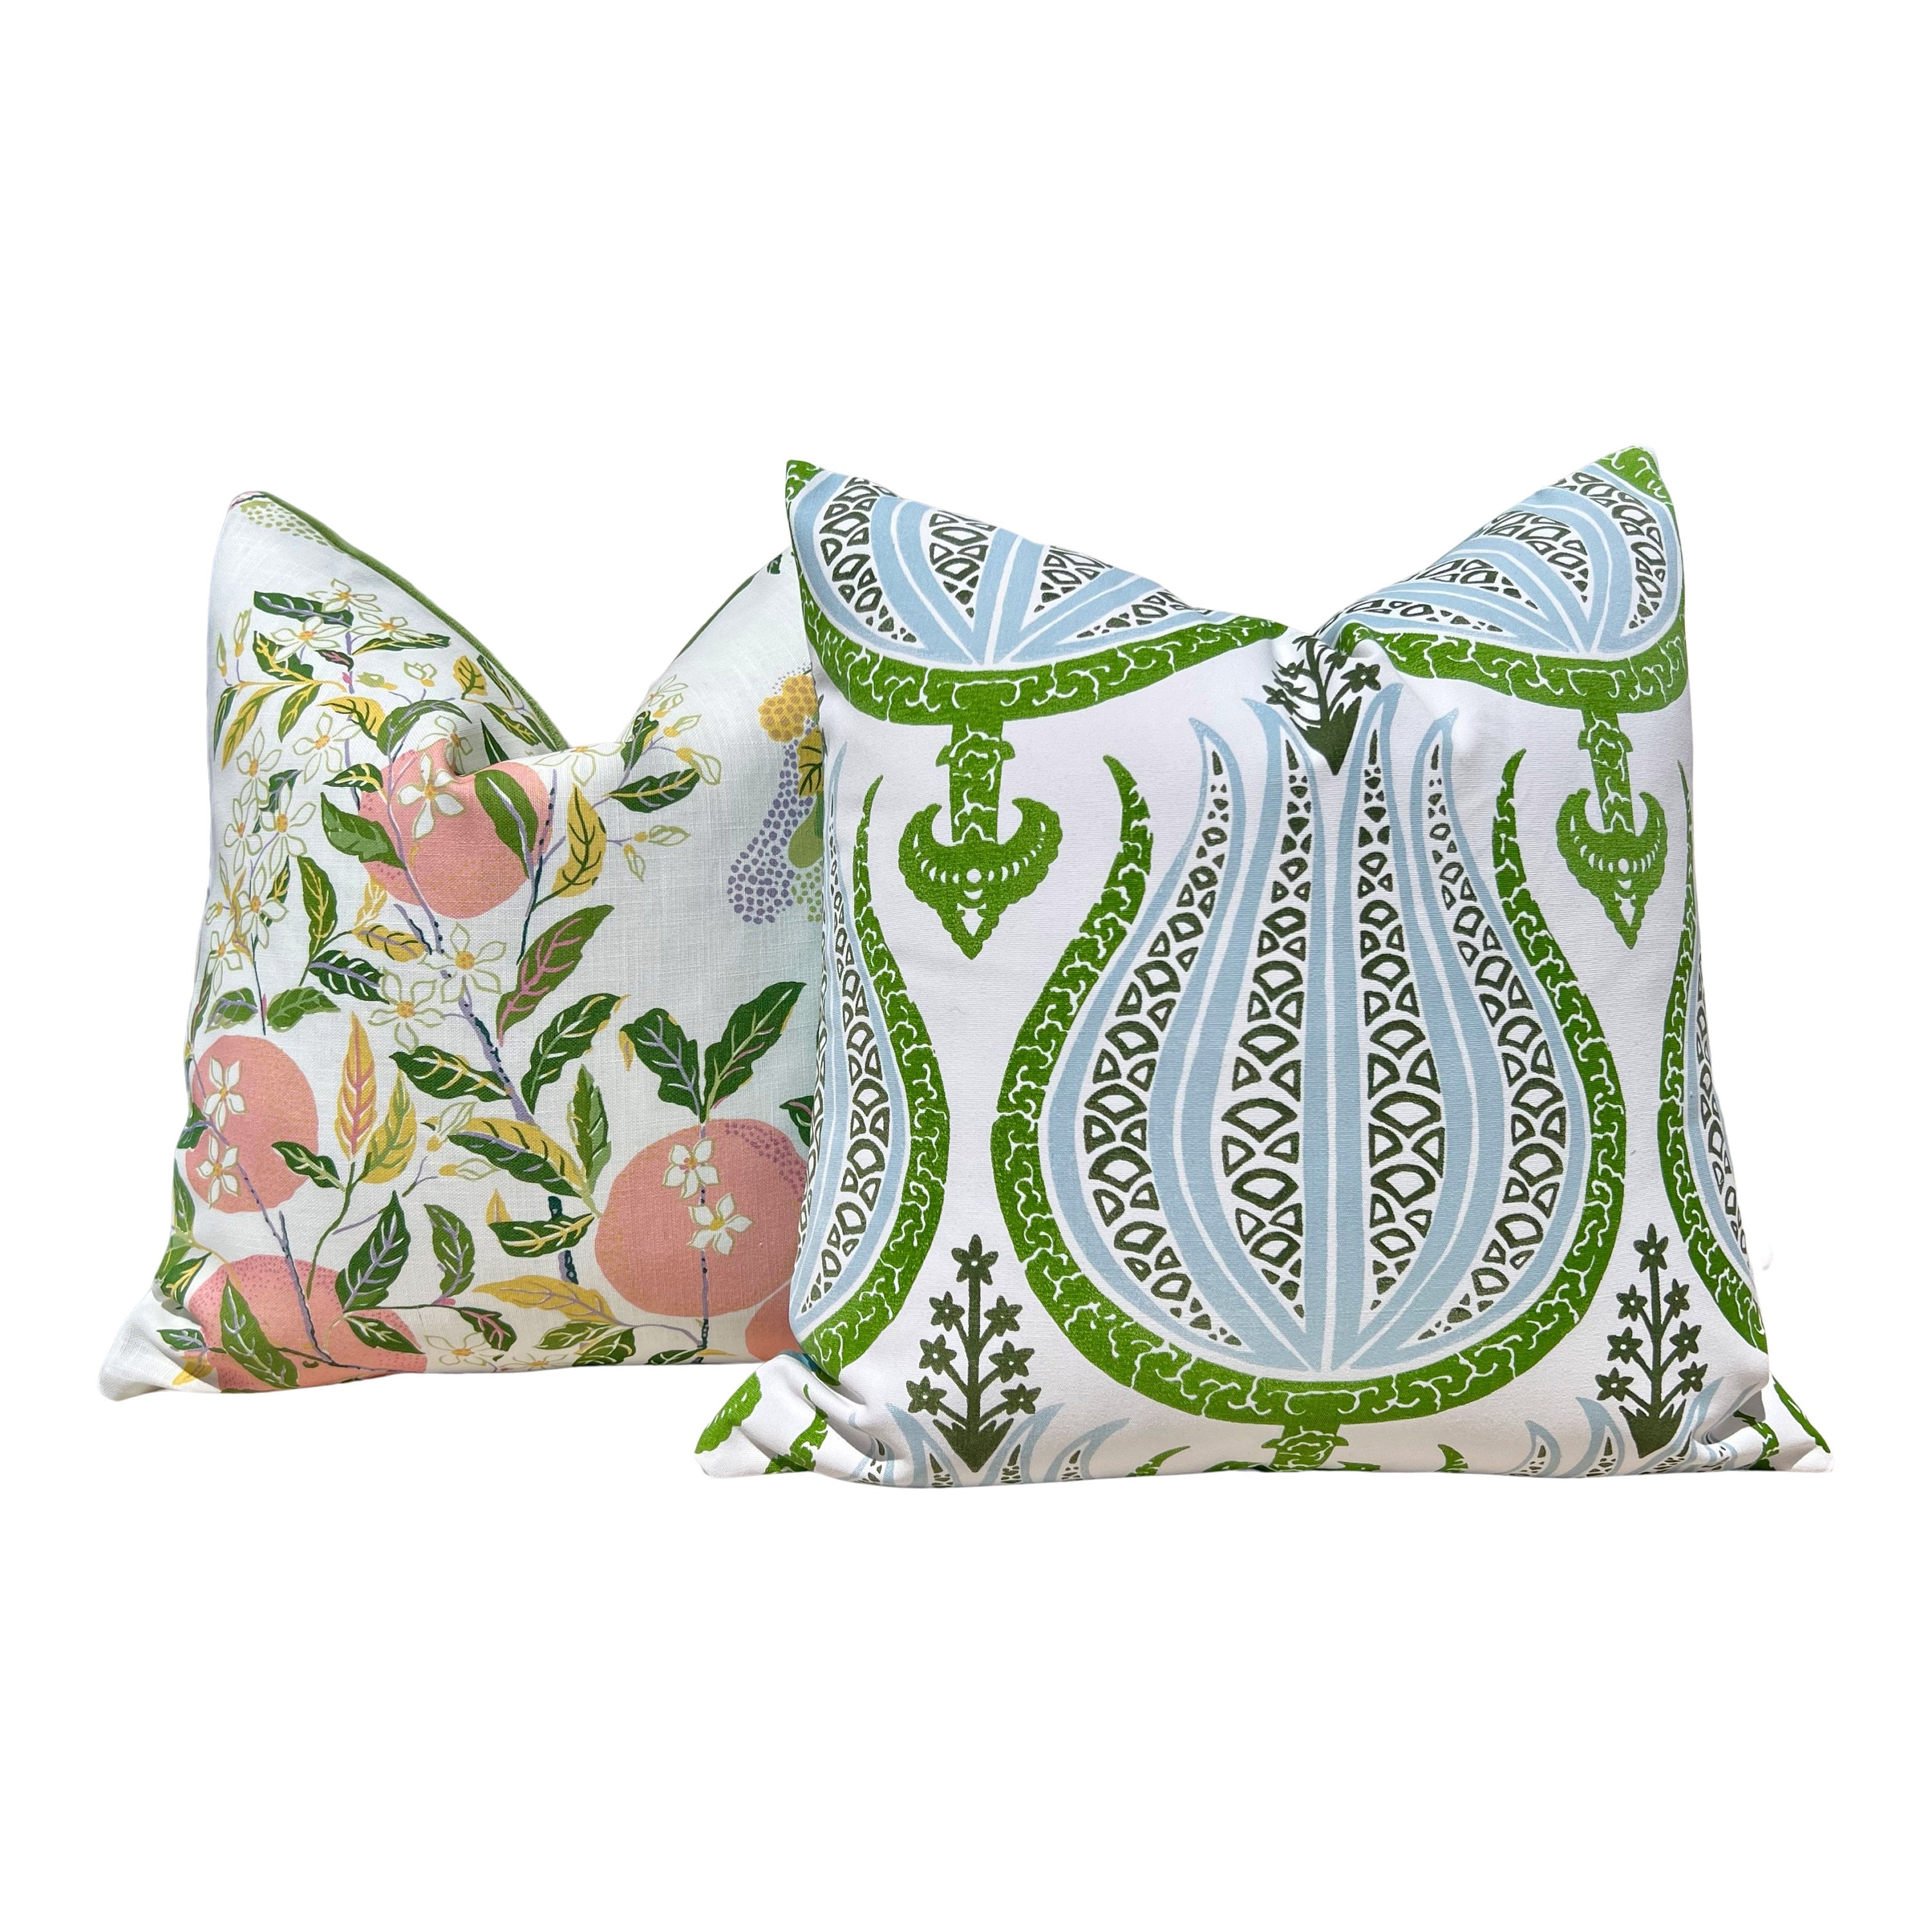 Schumacher Citrus Garden Pillow in Garden. Designer Outdoor Pillow, Josef Frank Accent Pillow, Lemon Tree Pillow Cover, Schumacher Pillow